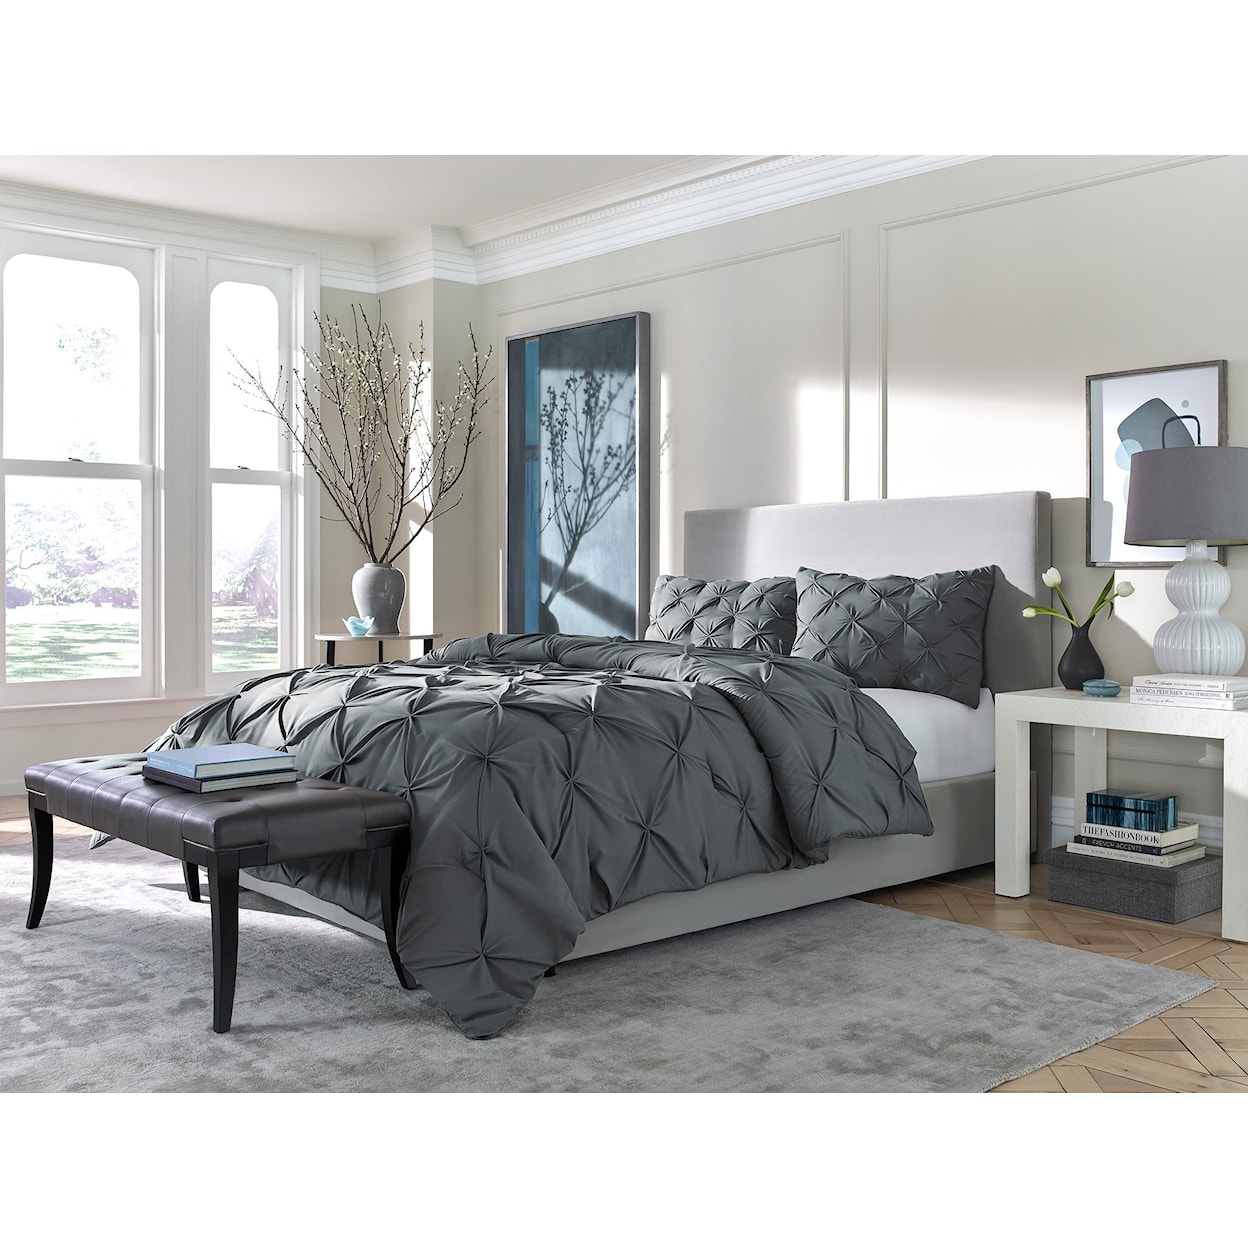 Sam's Furniture Sleep Essentials Pinch Down Alternative Twin Comforter Set